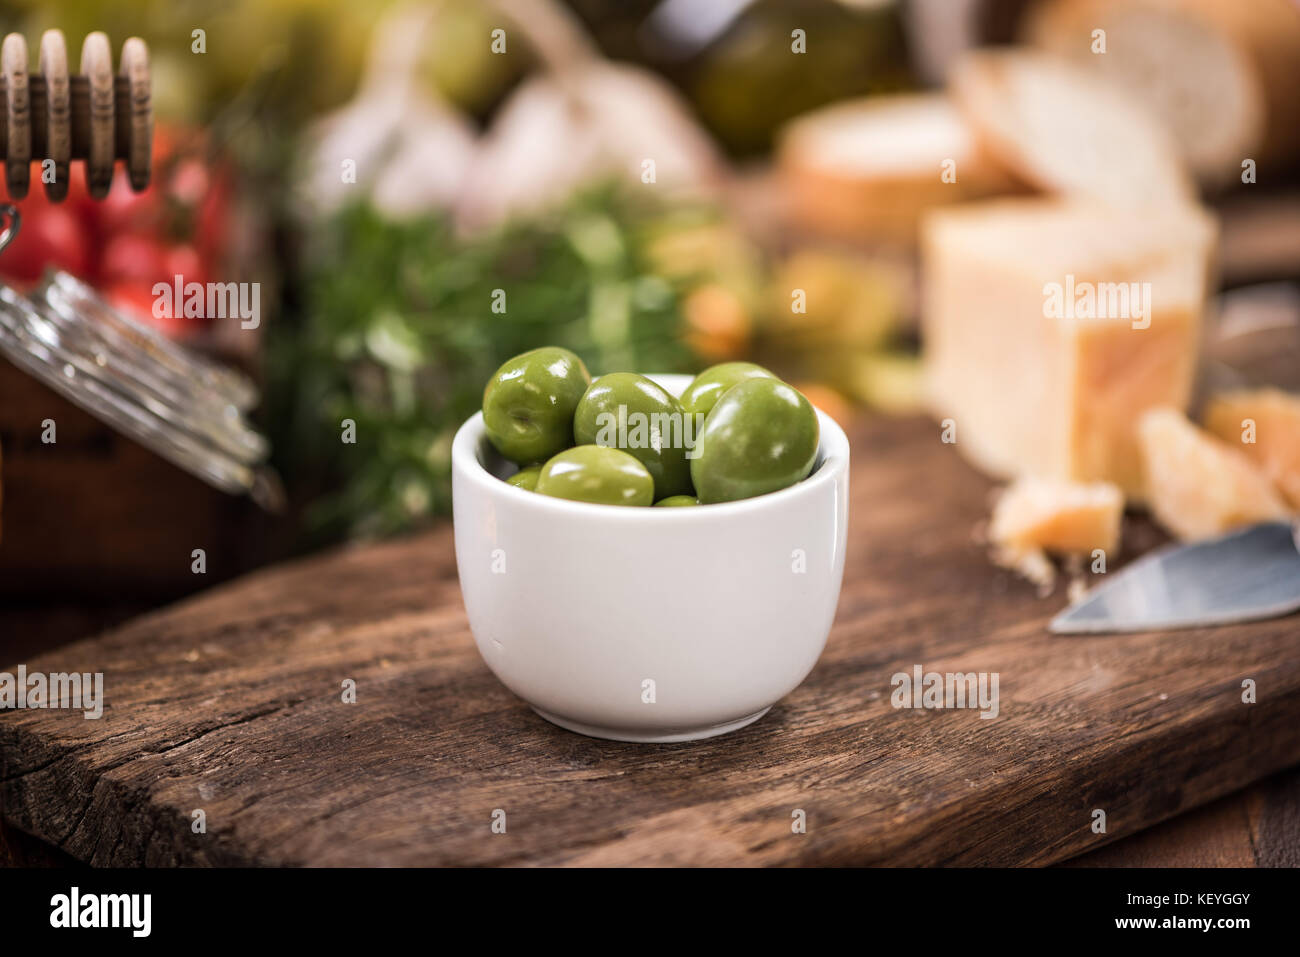 Dans un bol d'olives vertes,le bar à tapas de la nourriture. Banque D'Images